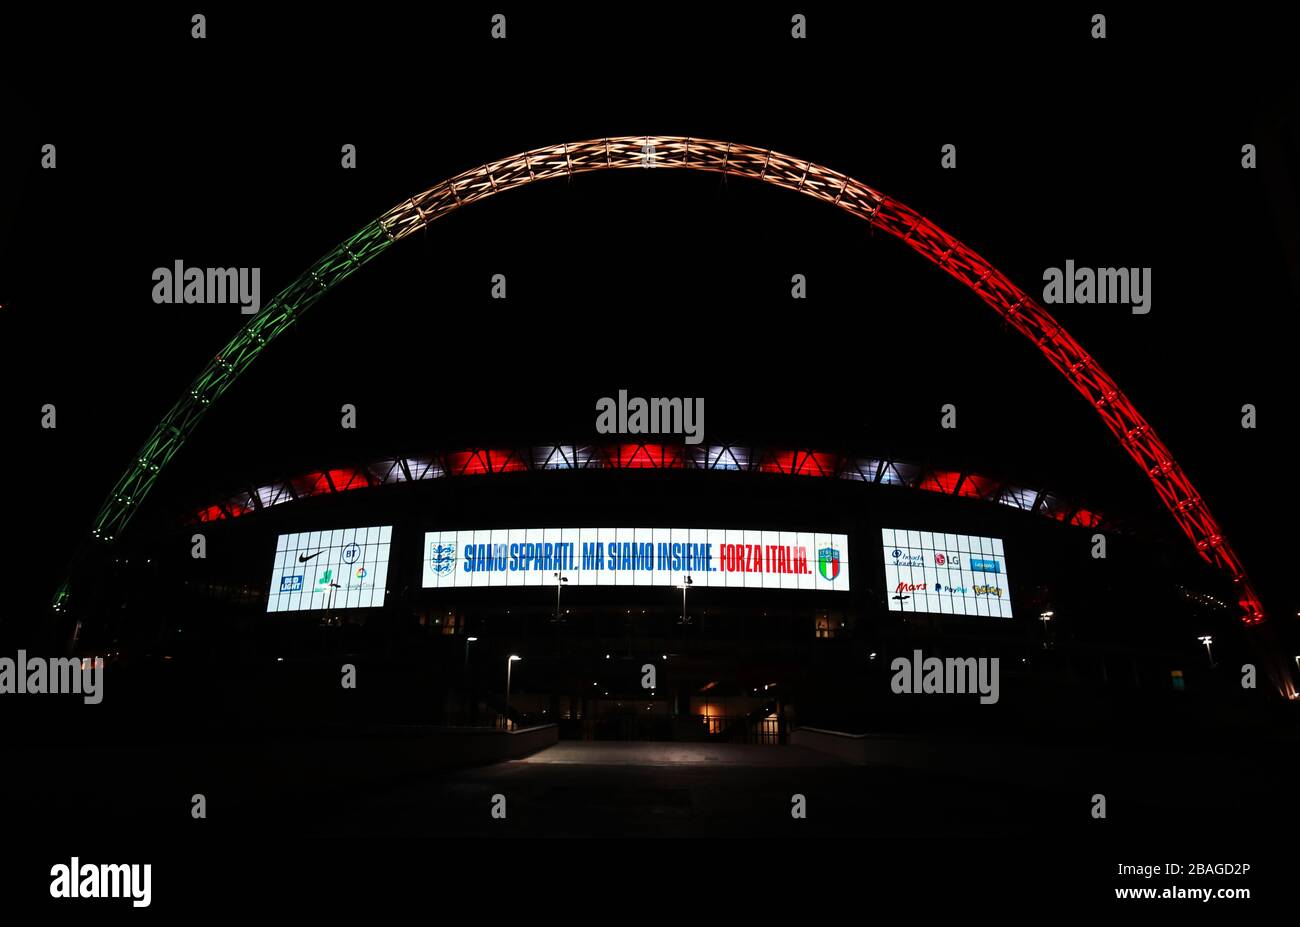 L'arco di Wembley a Londra è illuminato dai colori della bandiera italiana come gesto di solidarietà da parte della squadra di calcio inglese. Foto Stock